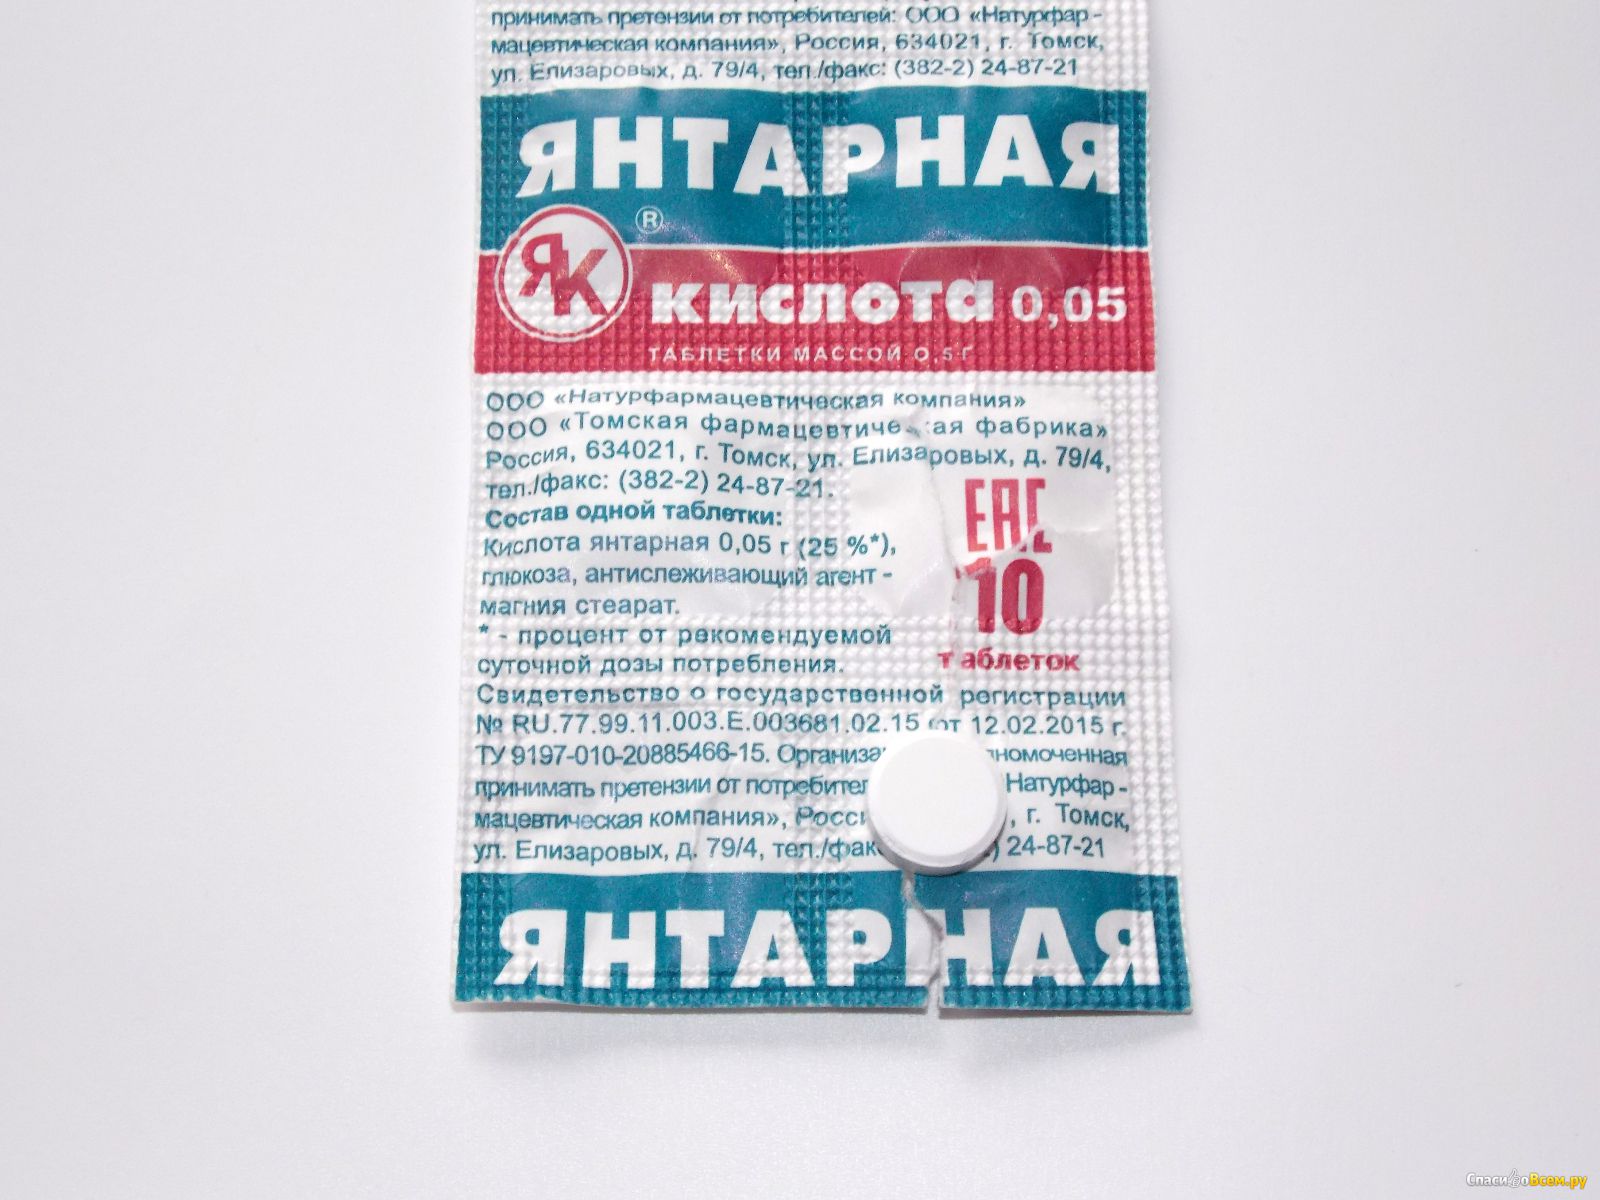 Ярославль Купить Янтарную Кислоту Аптечная Справка